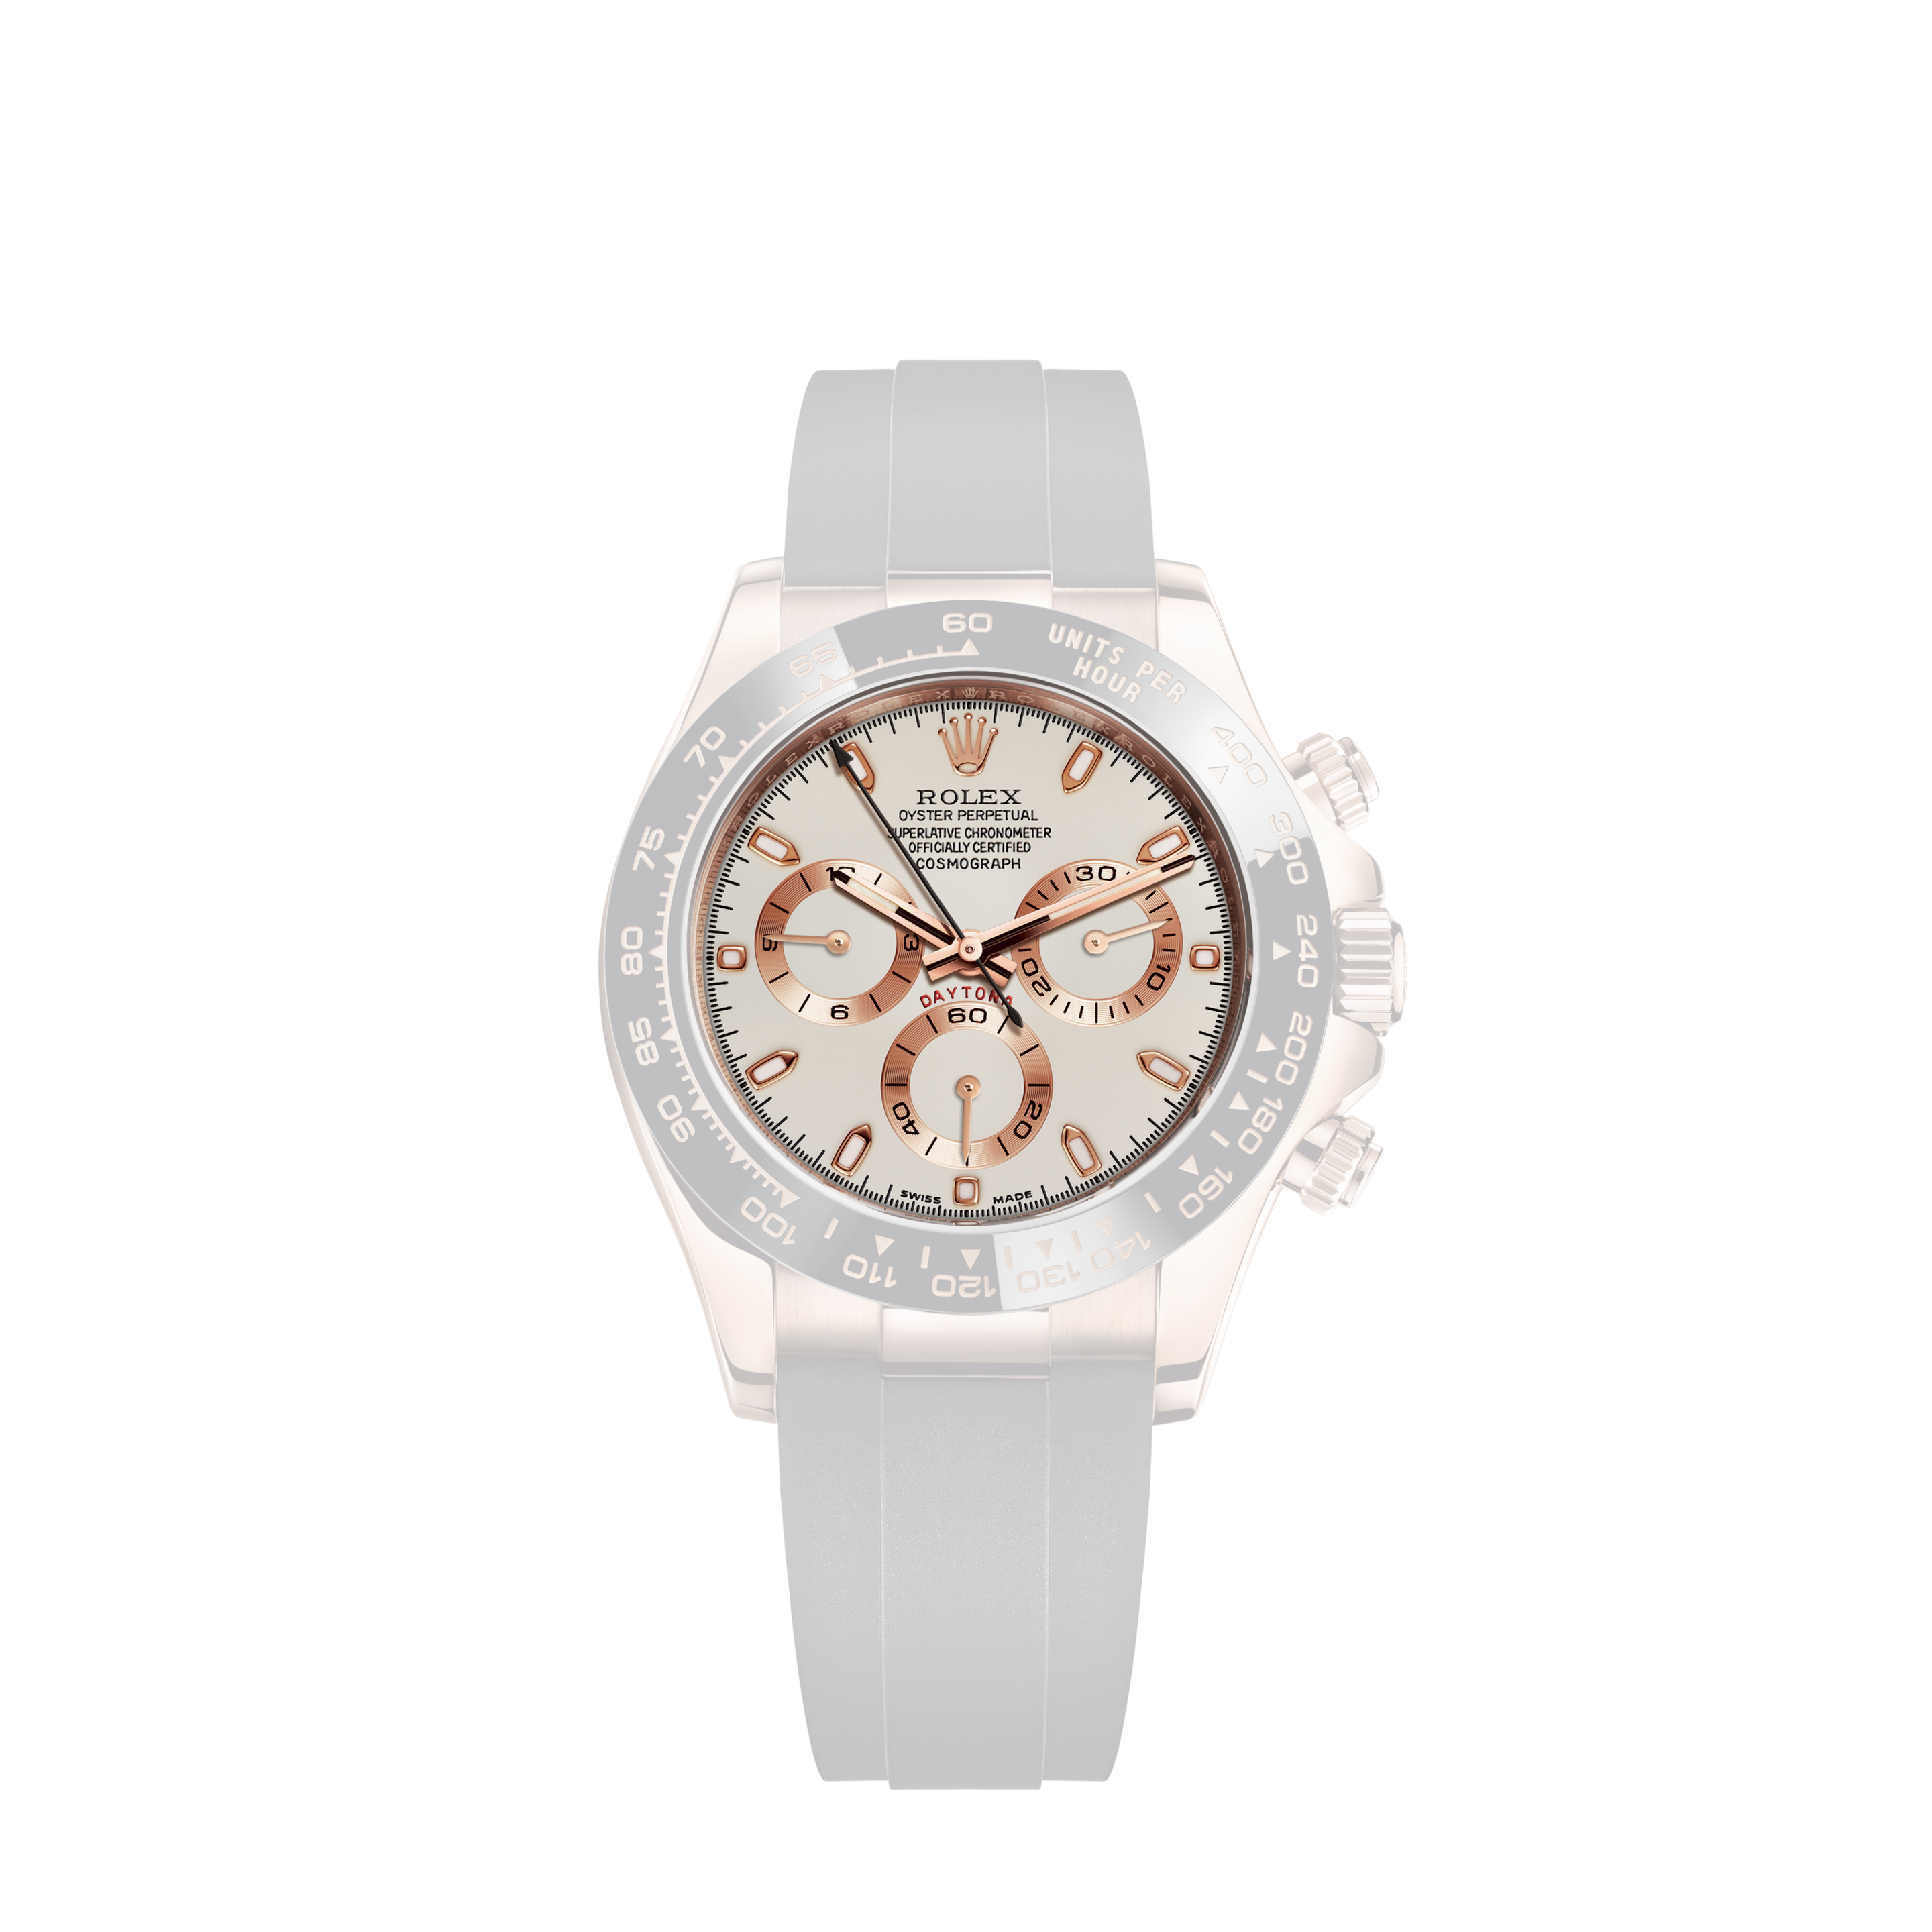 Rolex Daytona 6239 Stainless Steel 37mm watch